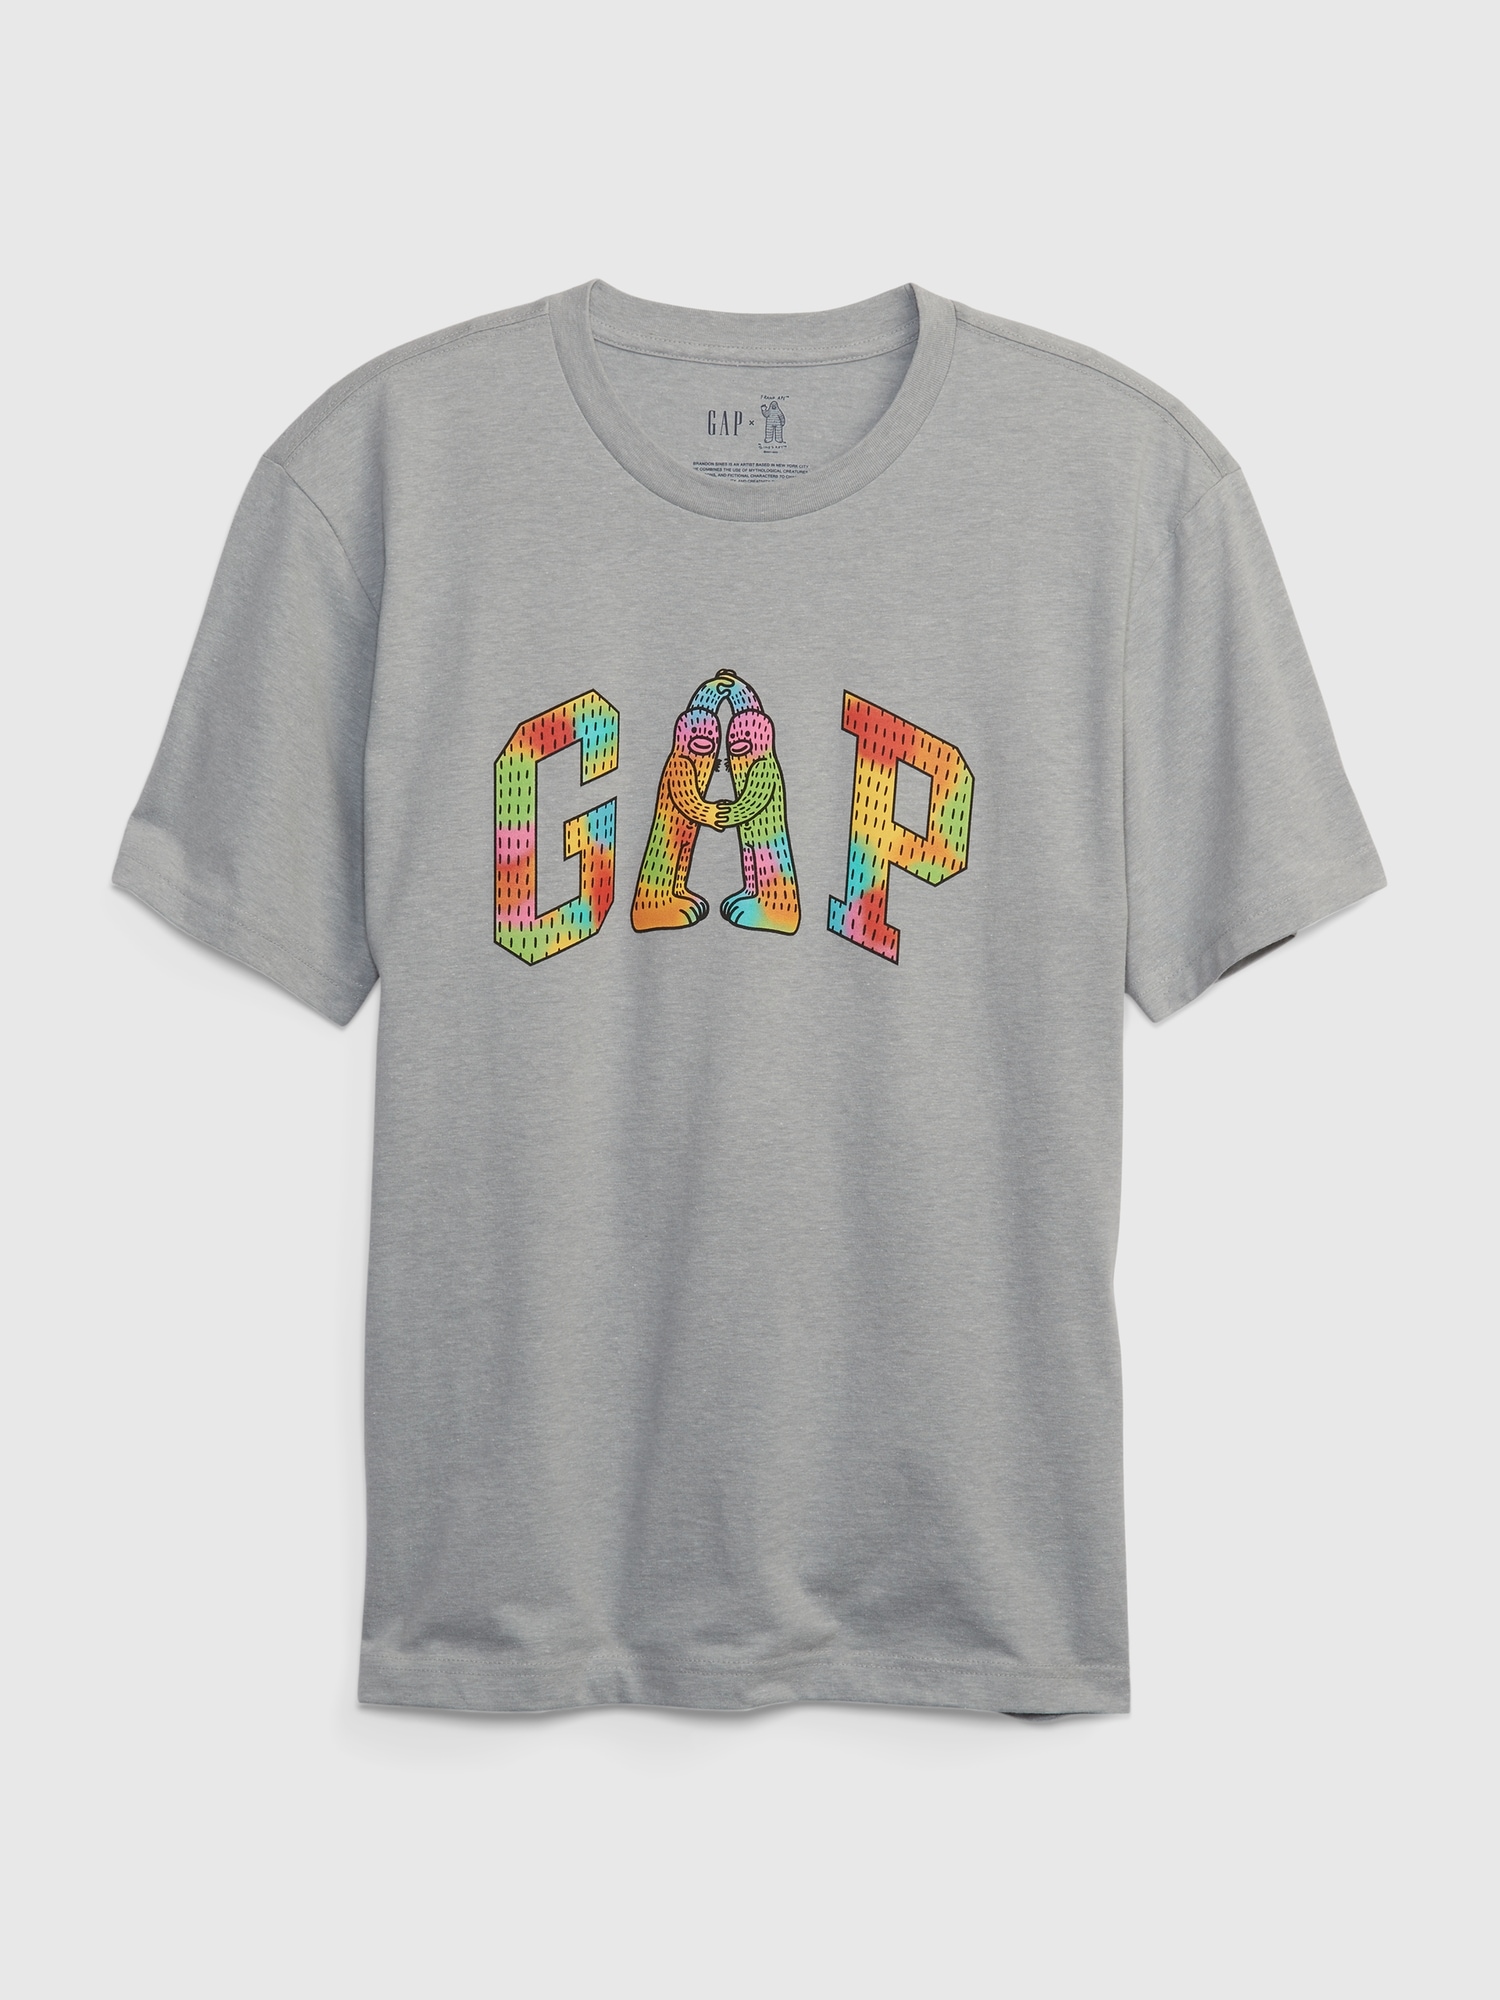 Gap X Frank Ape グラフィックtシャツ